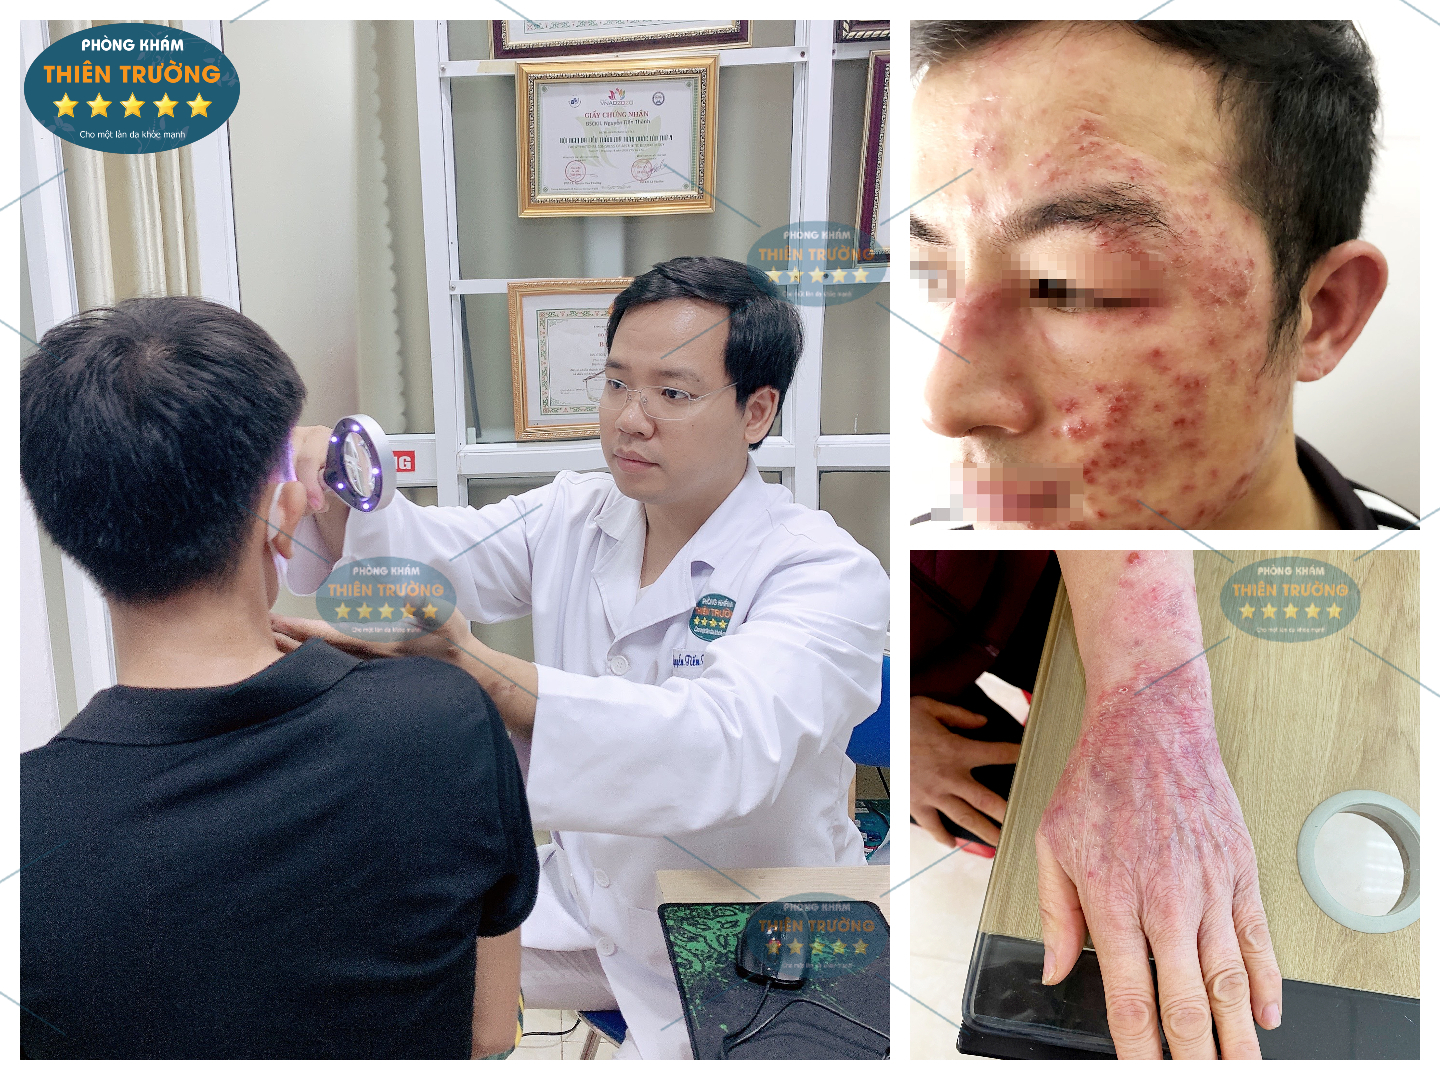 Hình ảnh: Thạc sĩ- Bác sĩ CK II Nguyễn Tiến Thành đang khám da cho bệnh nhân.